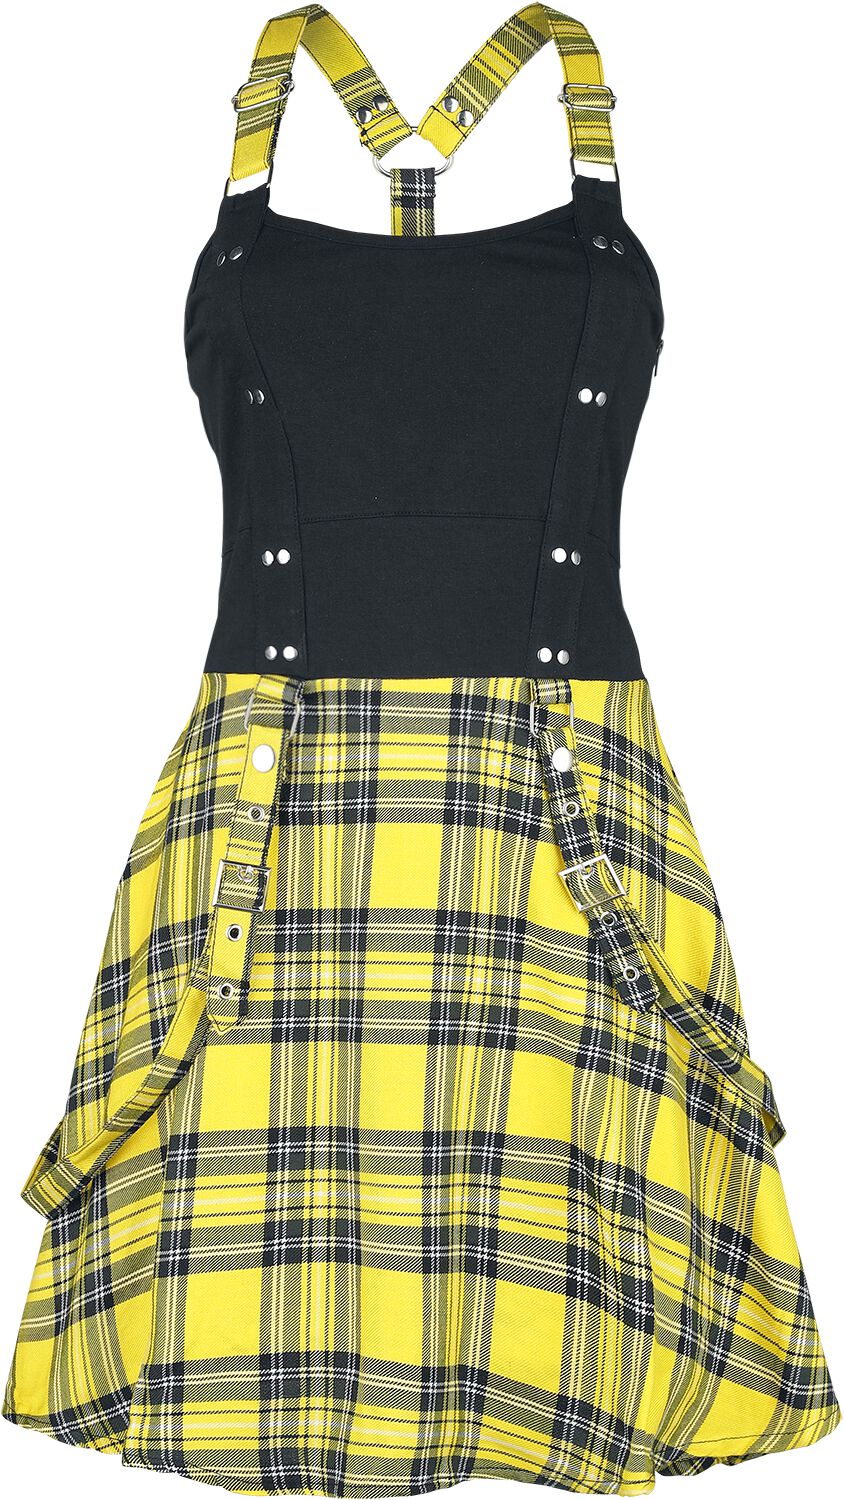 Heartless Kurzes Kleid - Incantation Dress - XS bis 4XL - für Damen - Größe XXL - schwarz/gelb